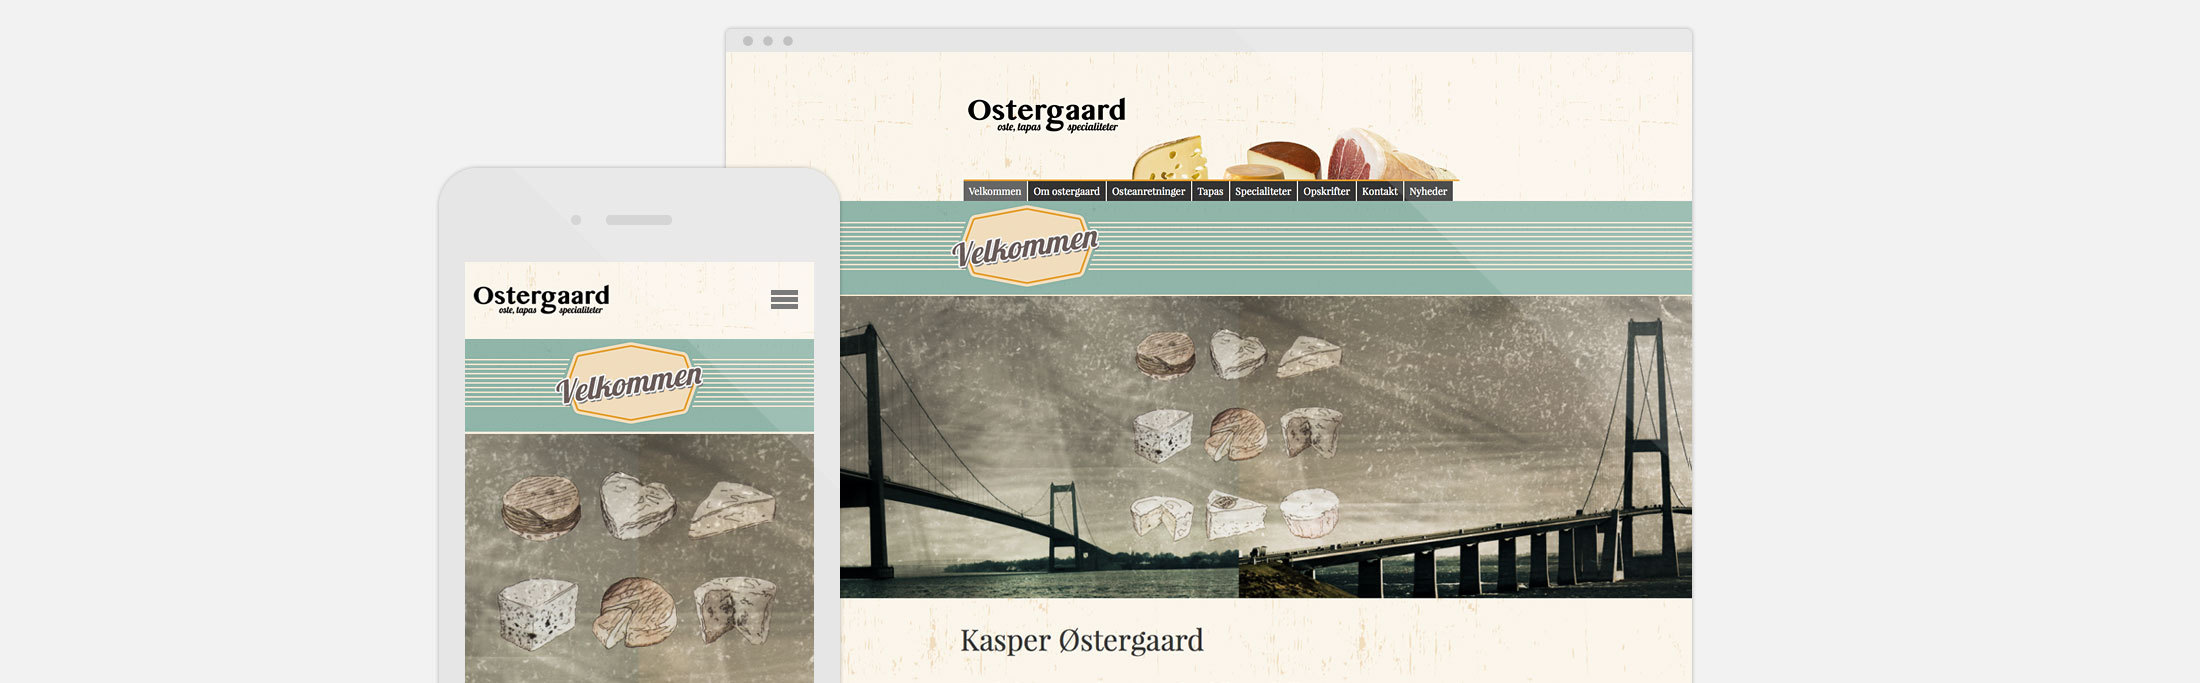 mono.net hjemmeside eksempel Ostergaard ost og tapas